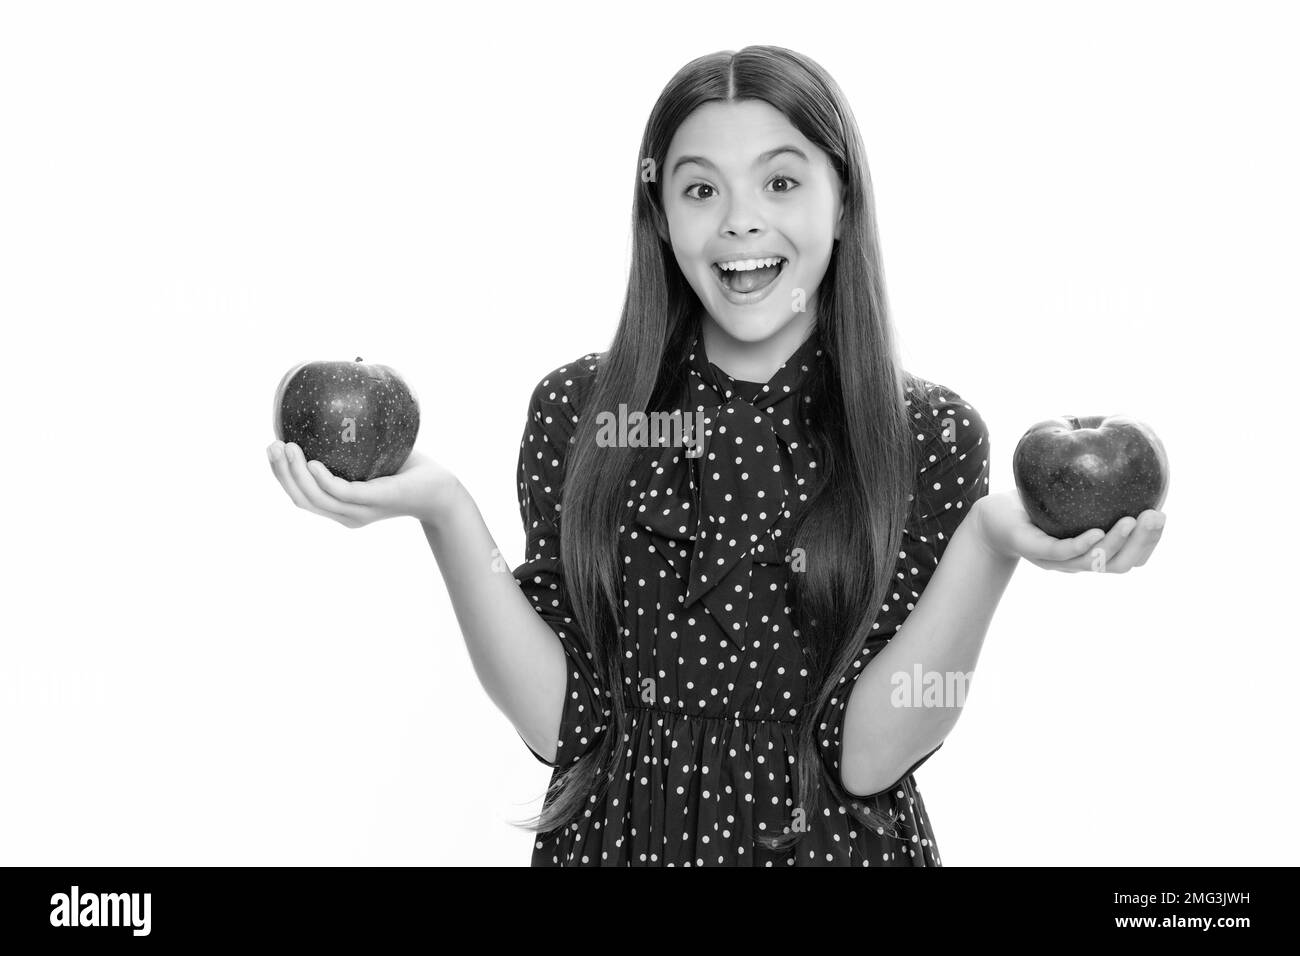 Adolescente fille mordre une pomme verte savoureuse. Portrait d'une jeune fille excitée et émotive. Banque D'Images